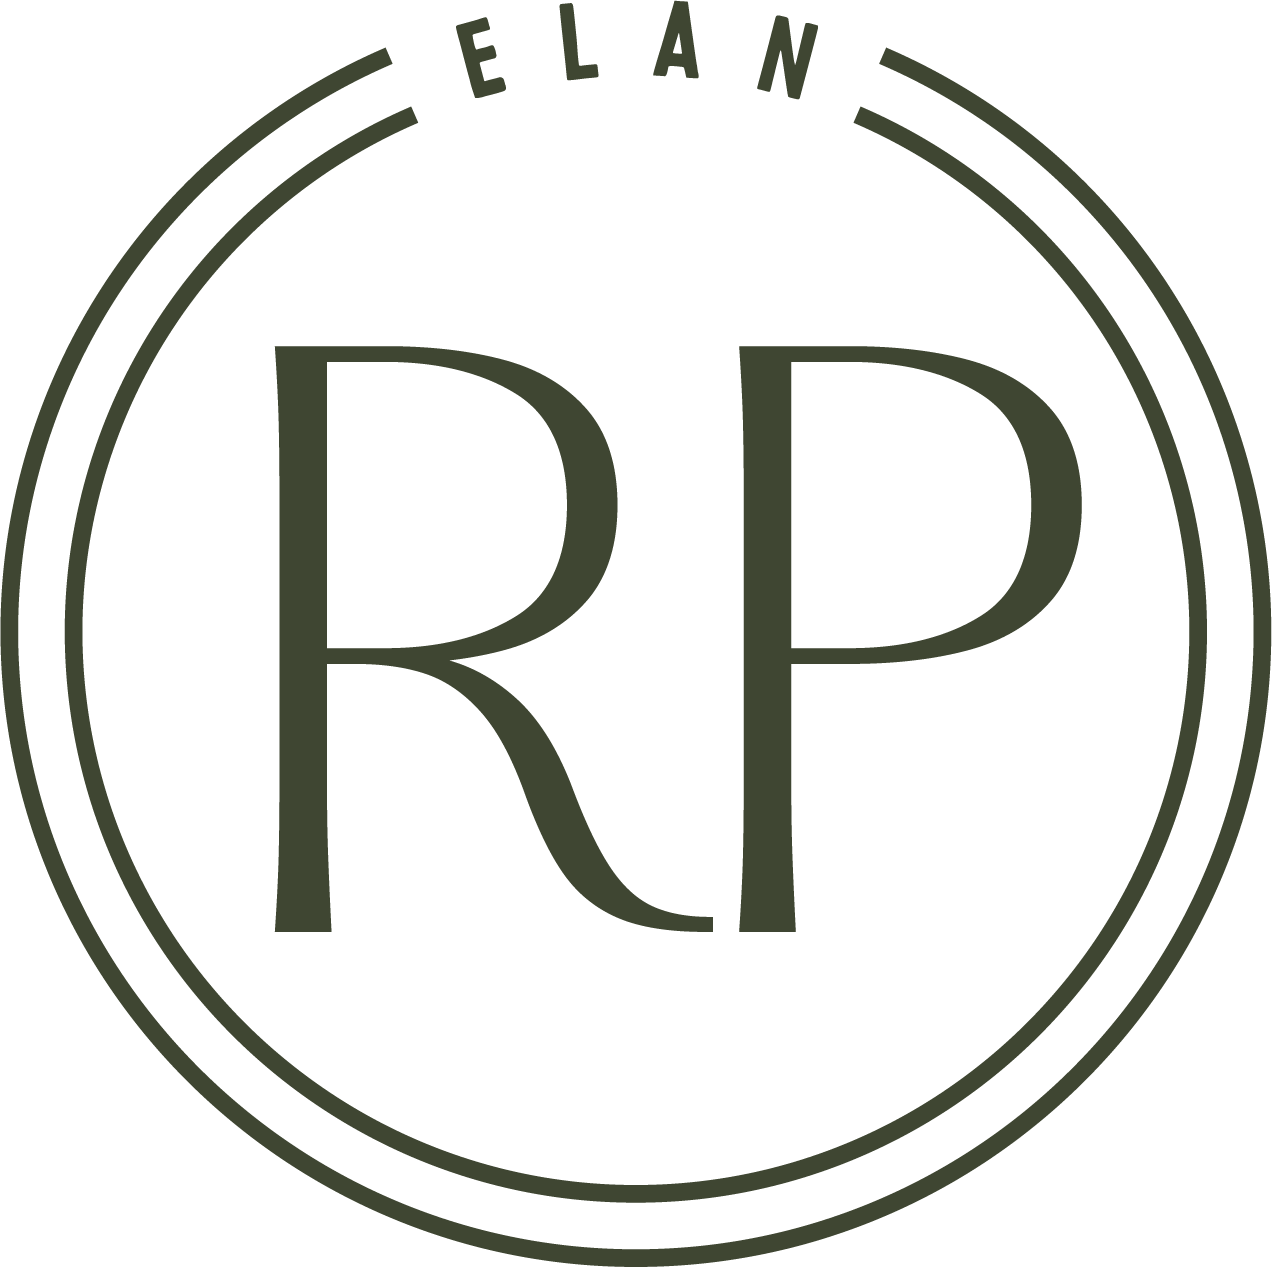  Elan research Park Logo